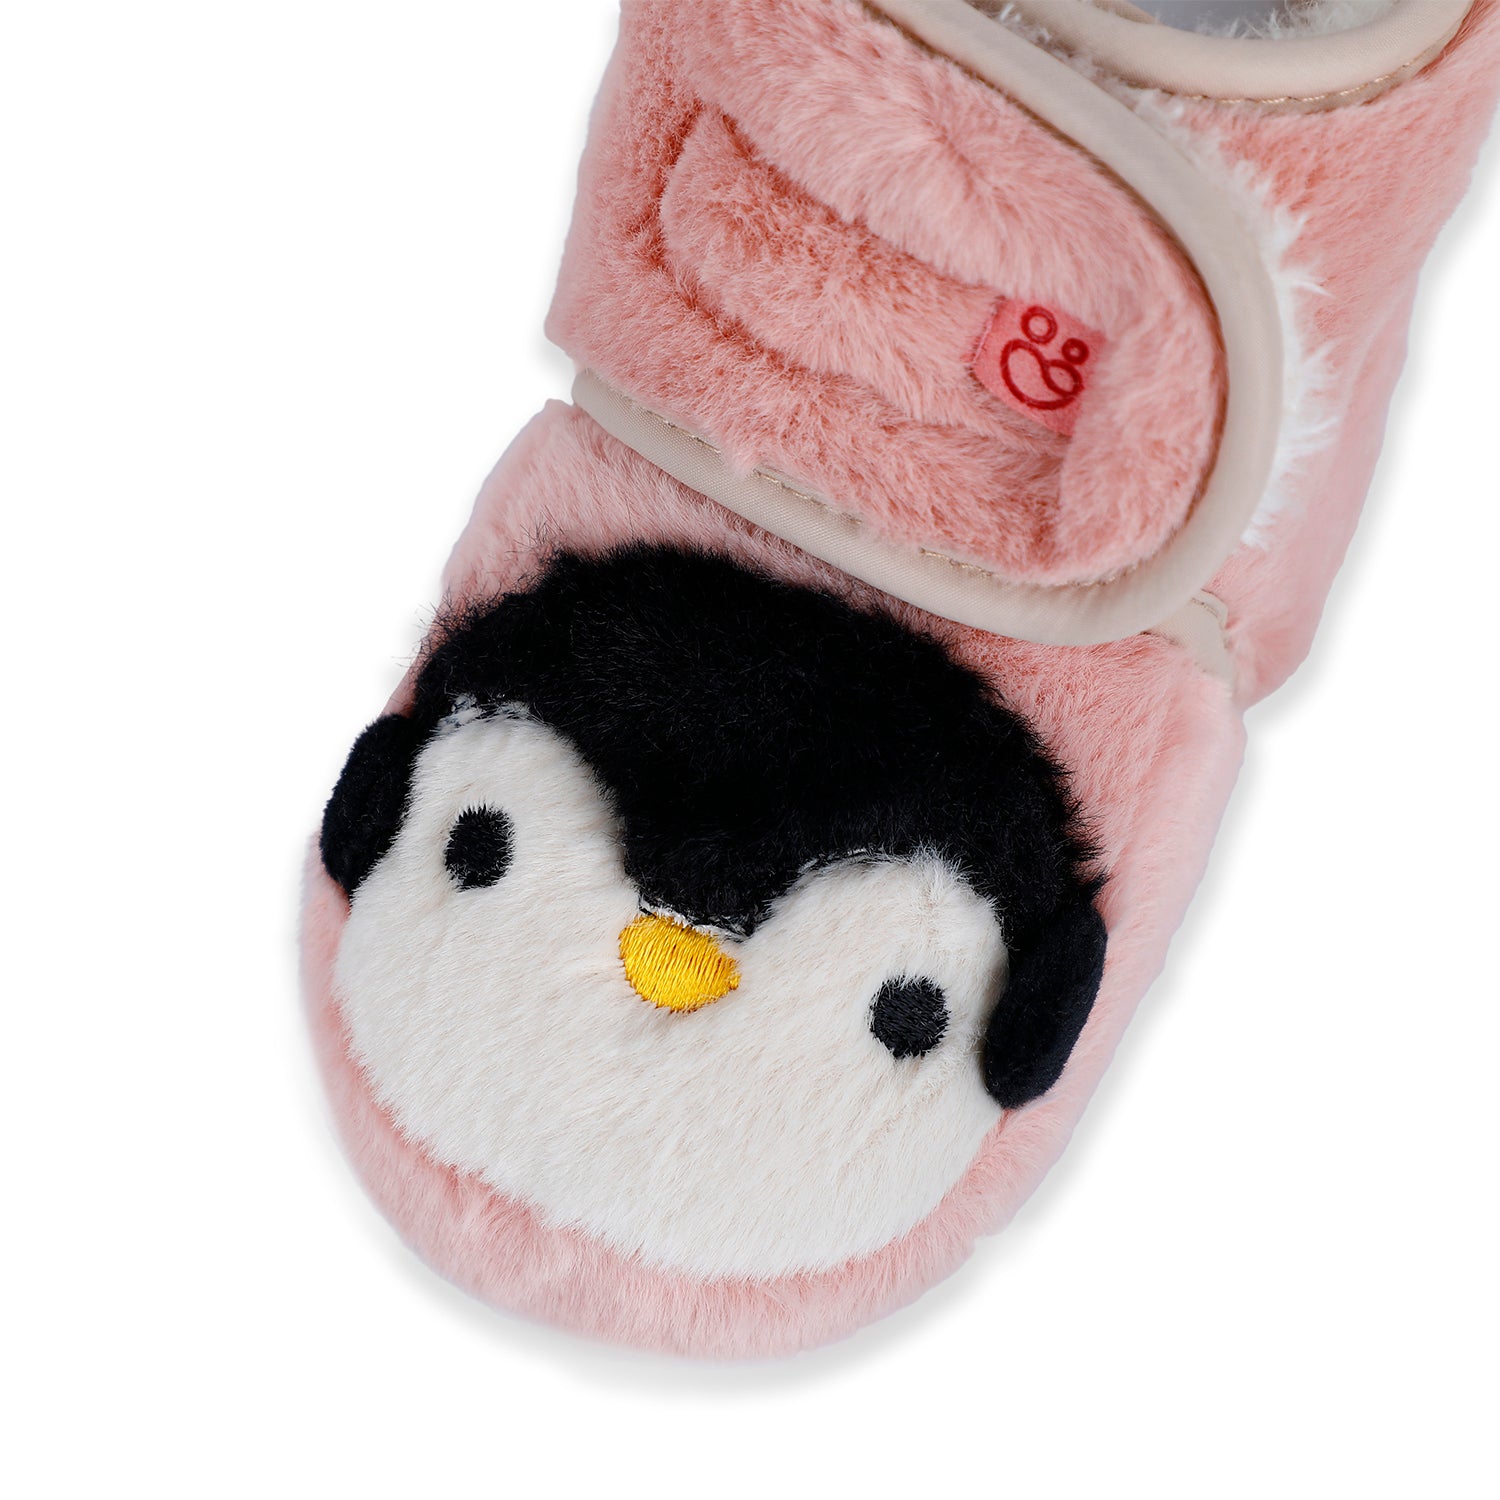 Baby Moo Penguin Warm Veclro Strap Fur Booties - Pink - Baby Moo